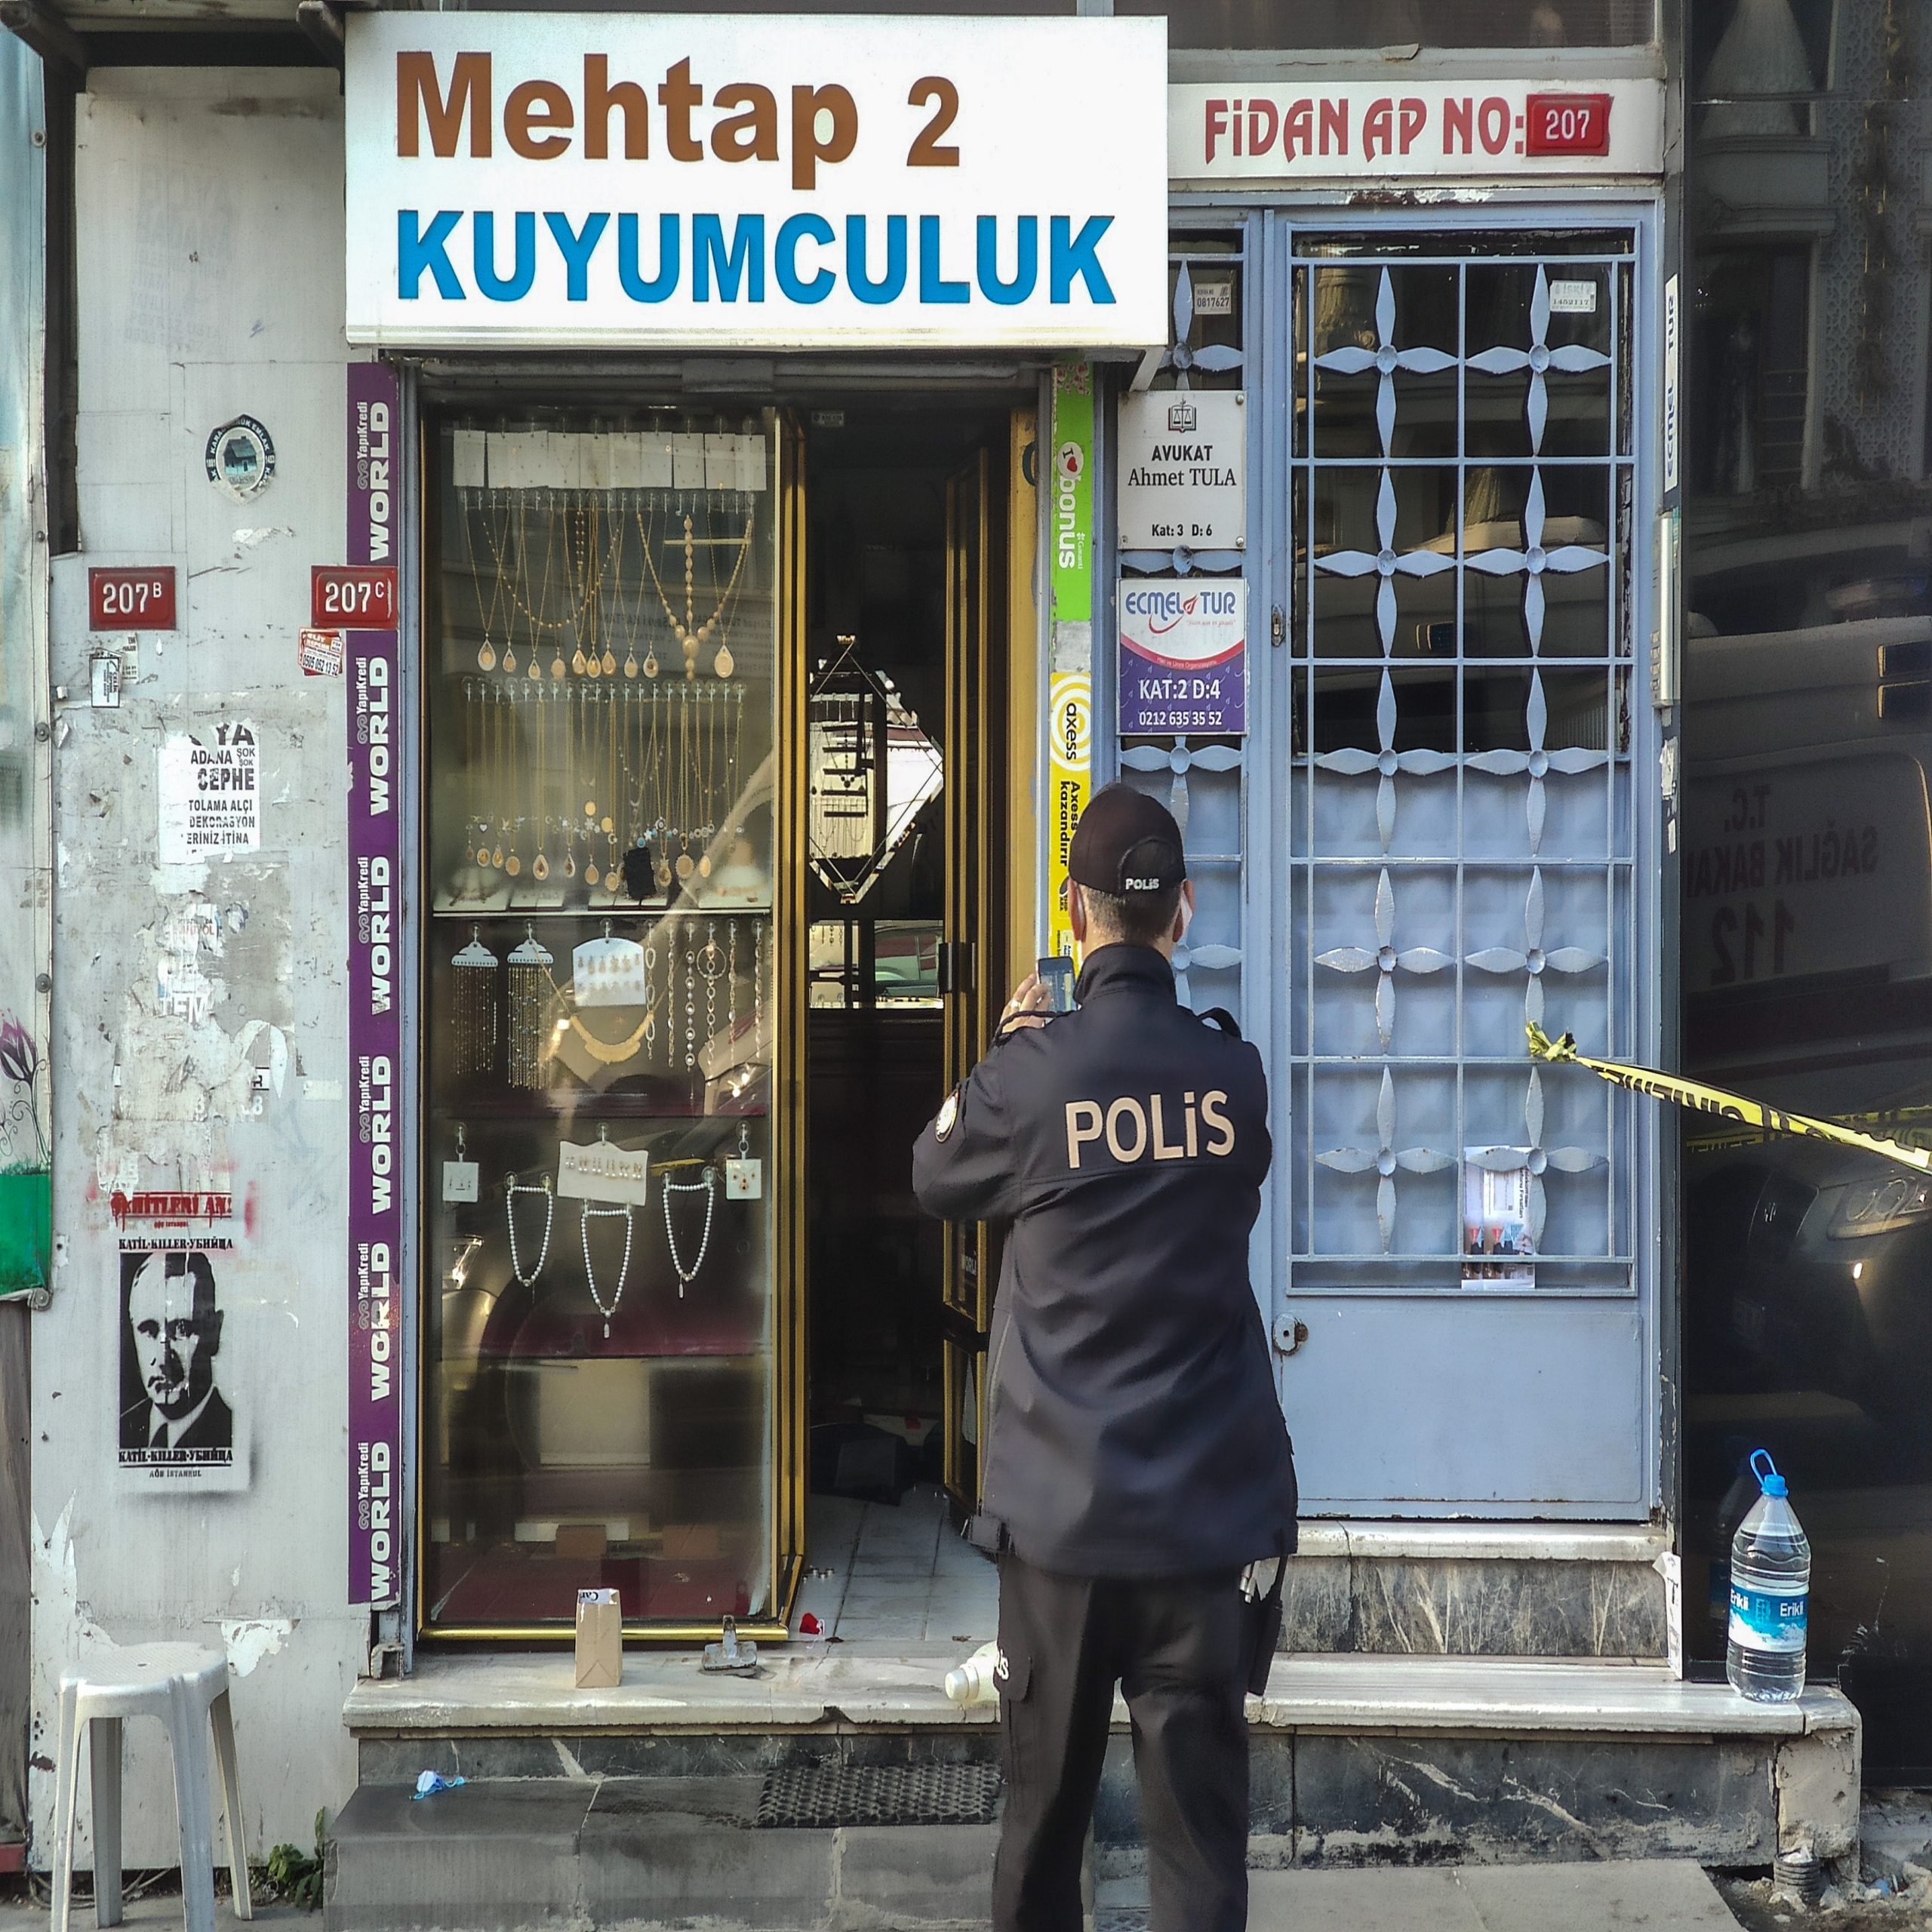 سرقة محل مصوغات تحت تهديد السلاح في إسطنبول